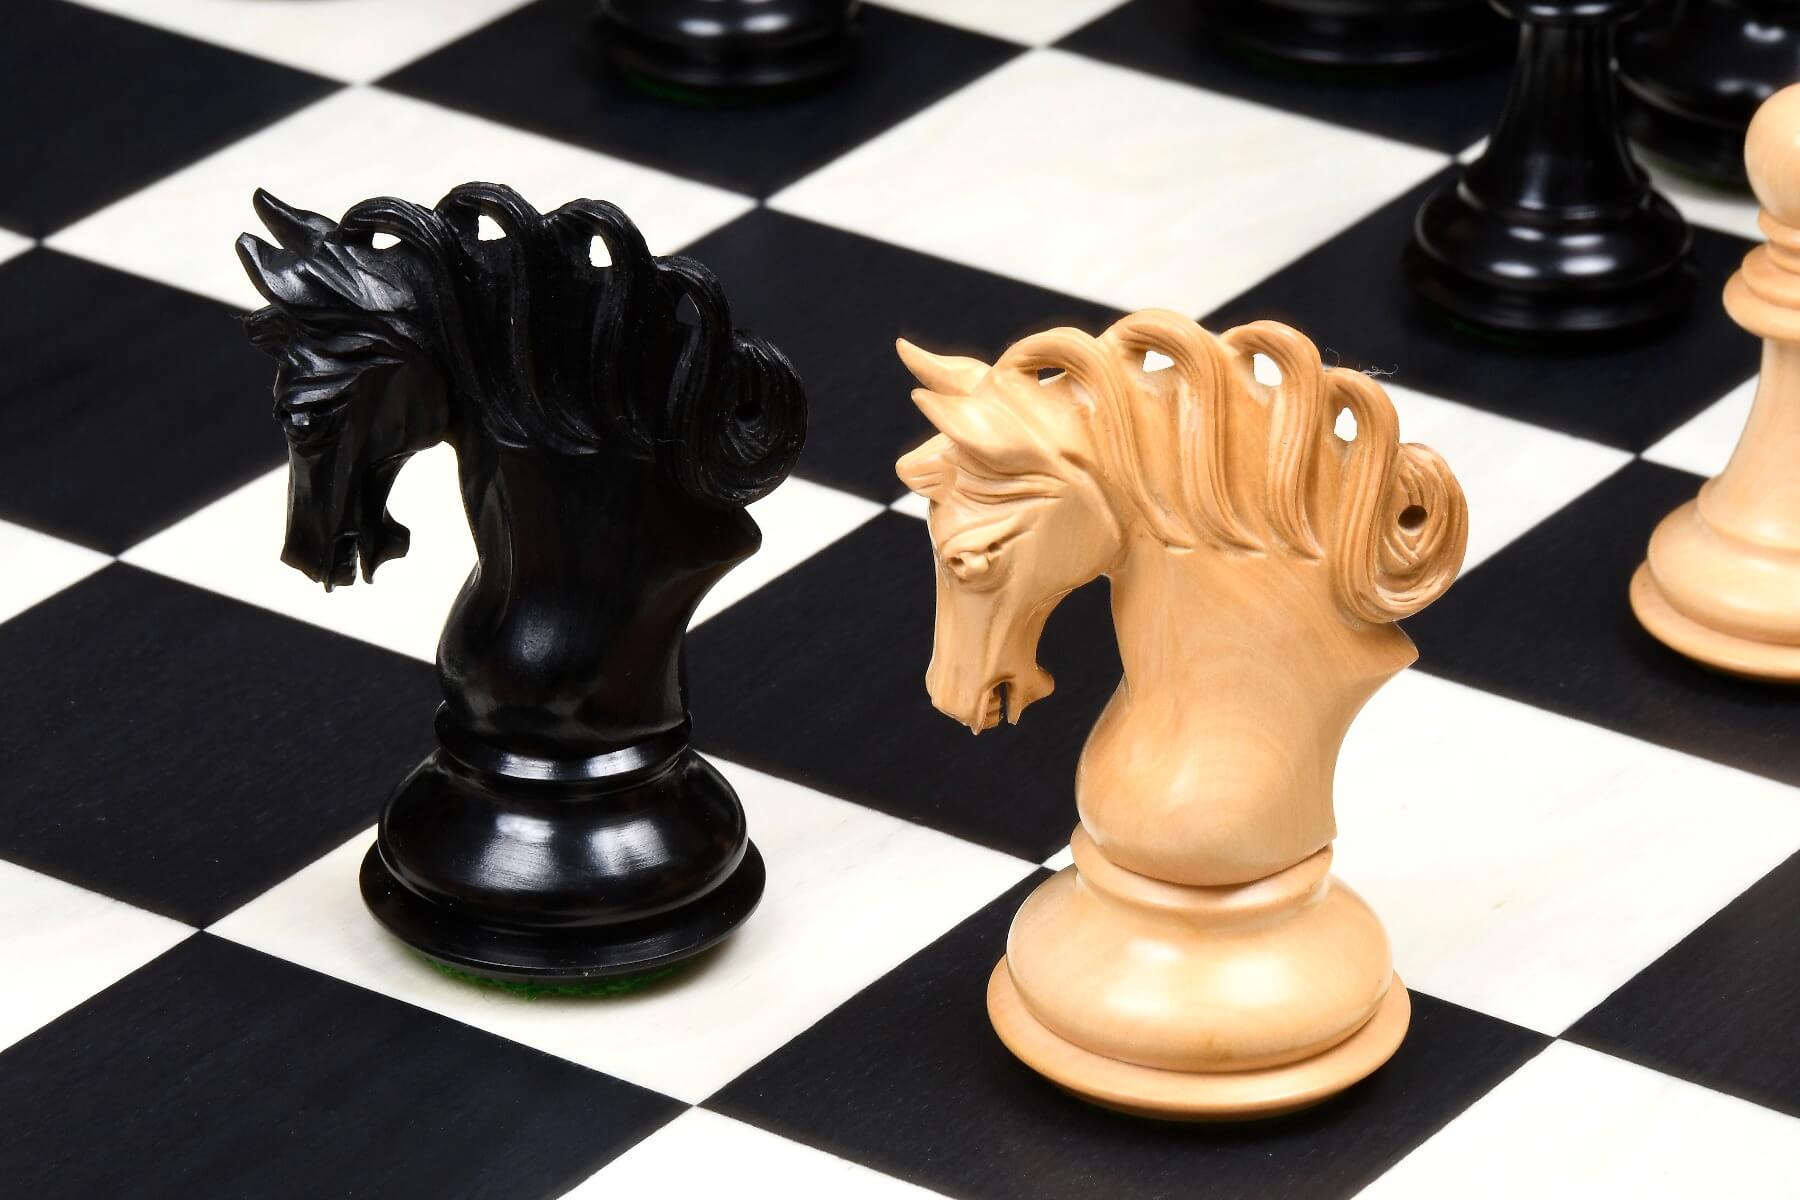 Gold König Schach Stück vor der Spielfigur auf schwarzen